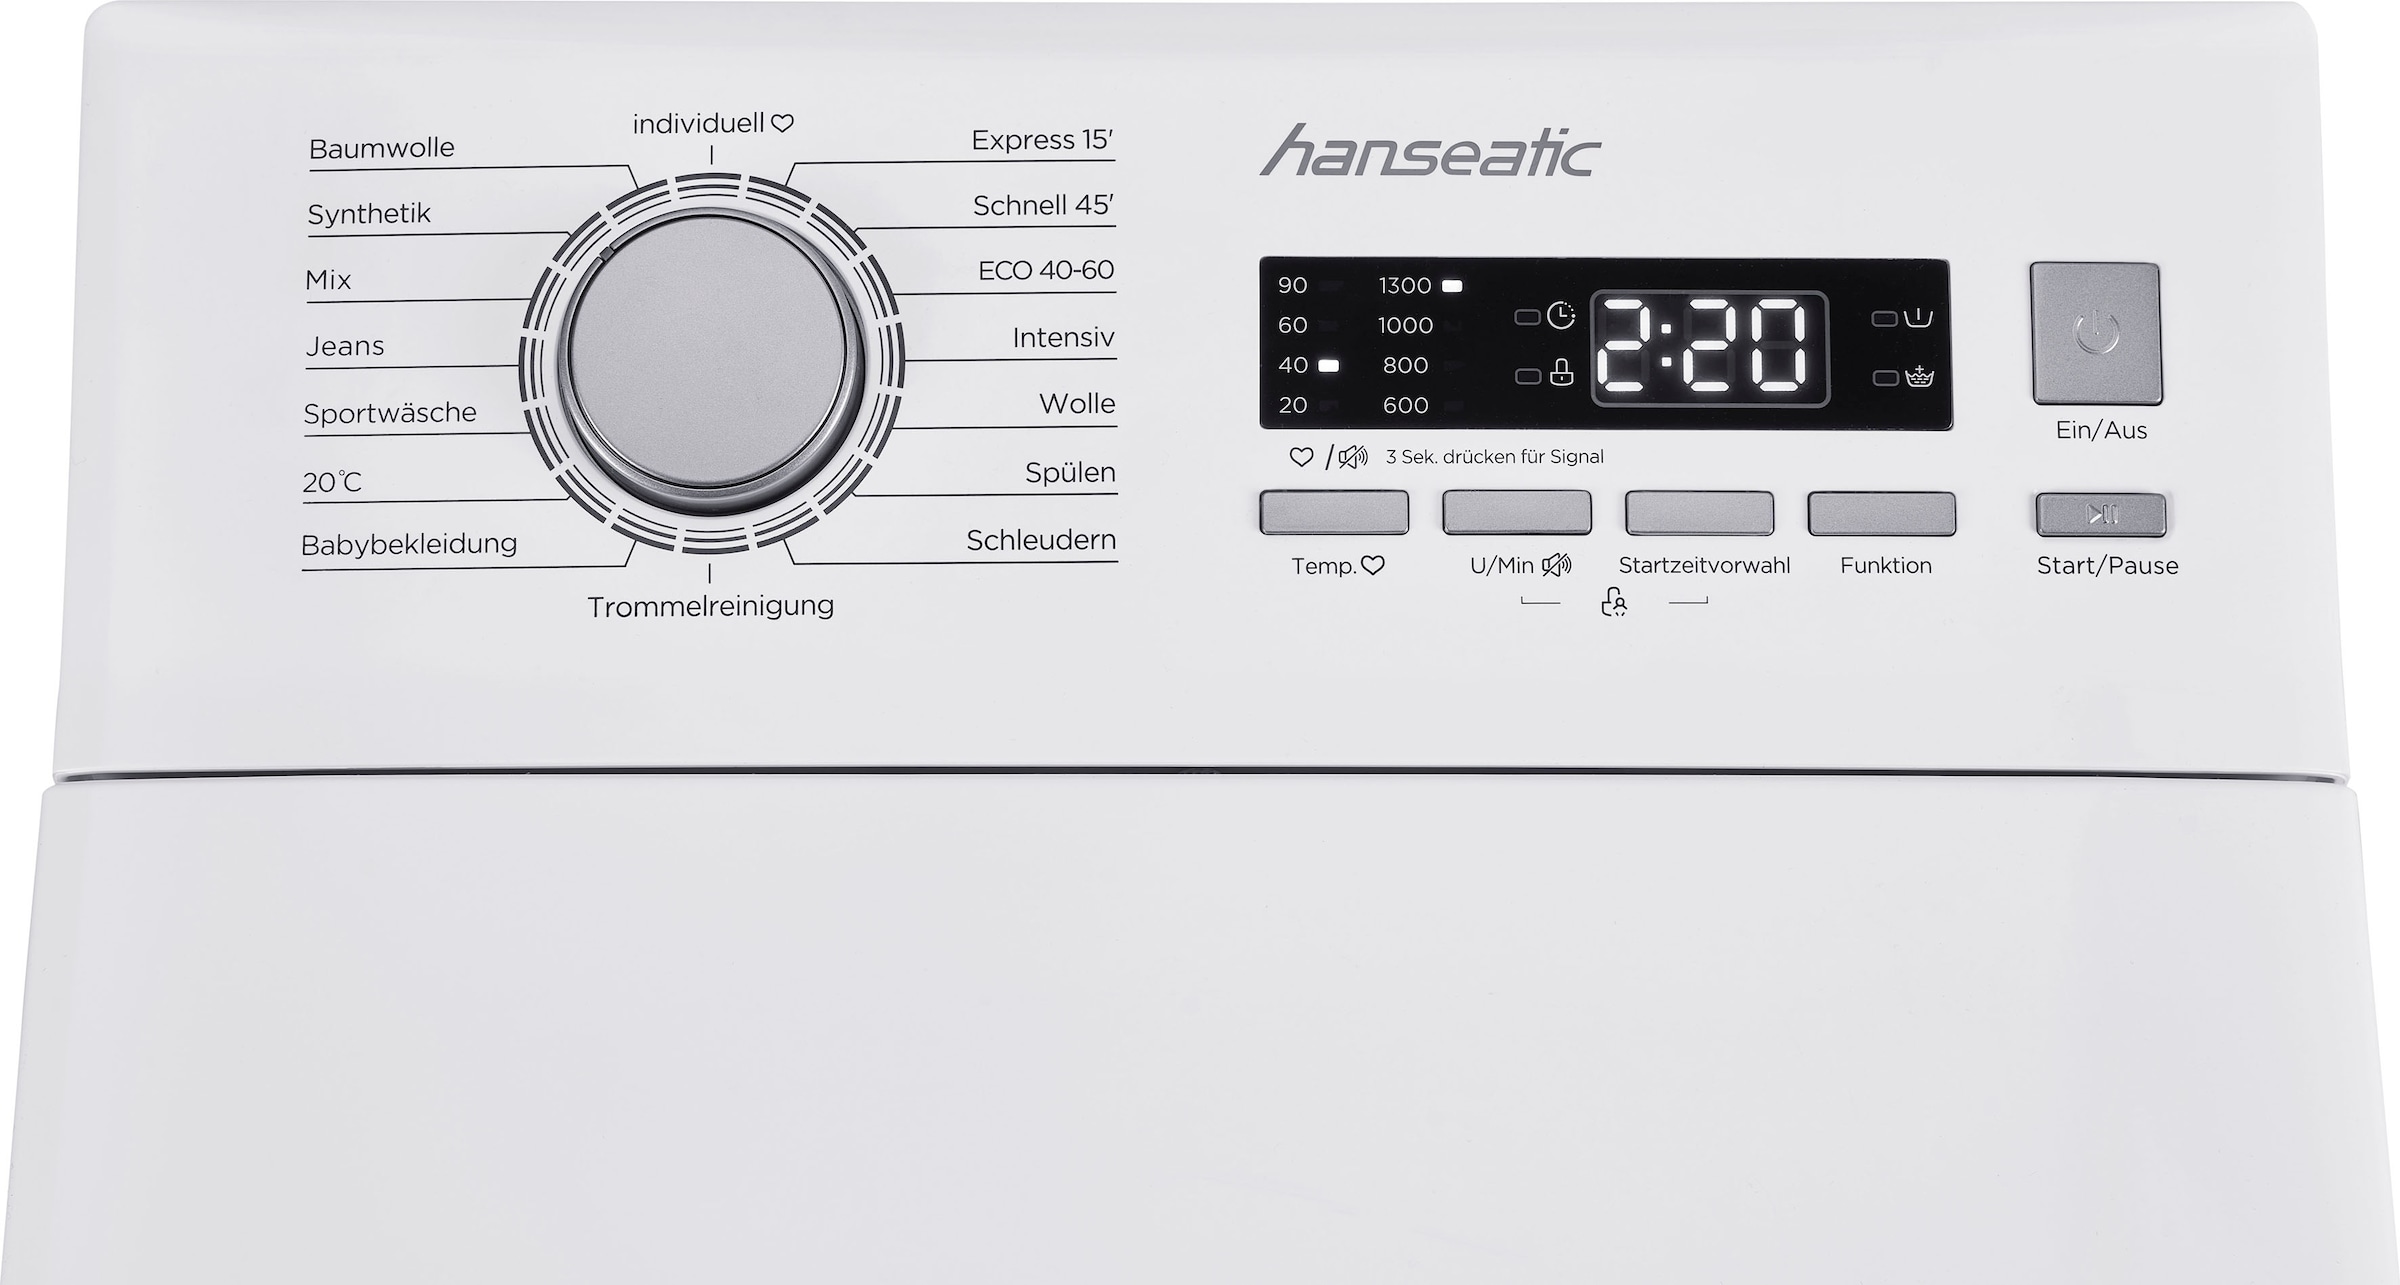 8 Mengenautomatik, Überlaufschutzsystem U/min, online 1300 Waschmaschine Toplader, Hanseatic HTW8013C, kg, kaufen